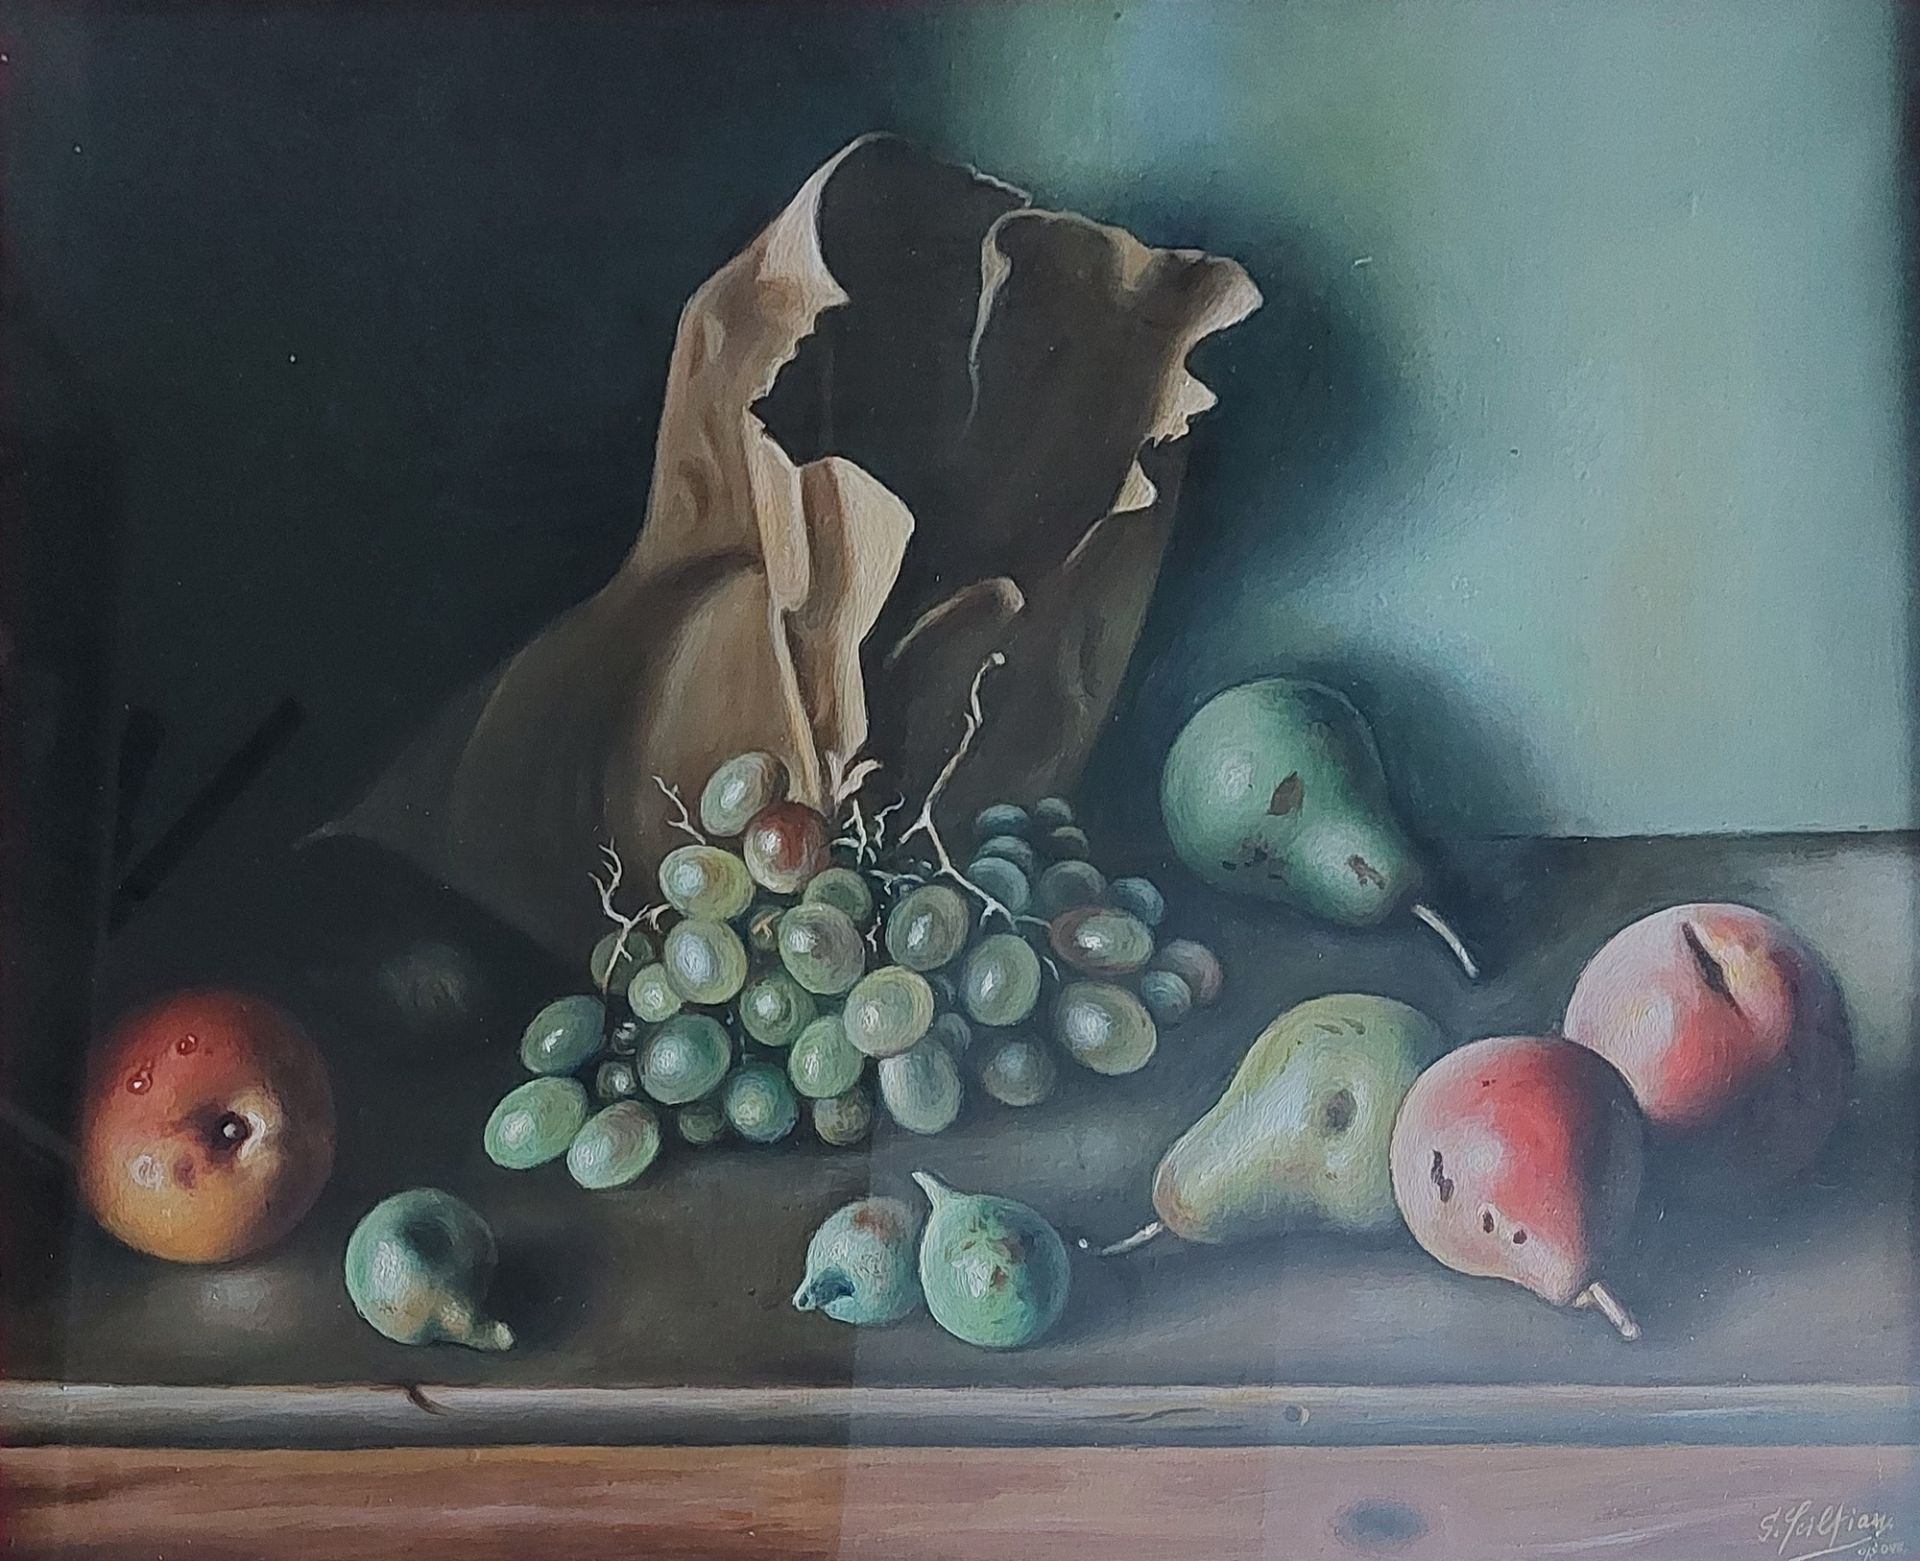 Gregorio Sciltian (Nakhichevan-on-Don 1900-Roma 1985) - Fruit, 1970